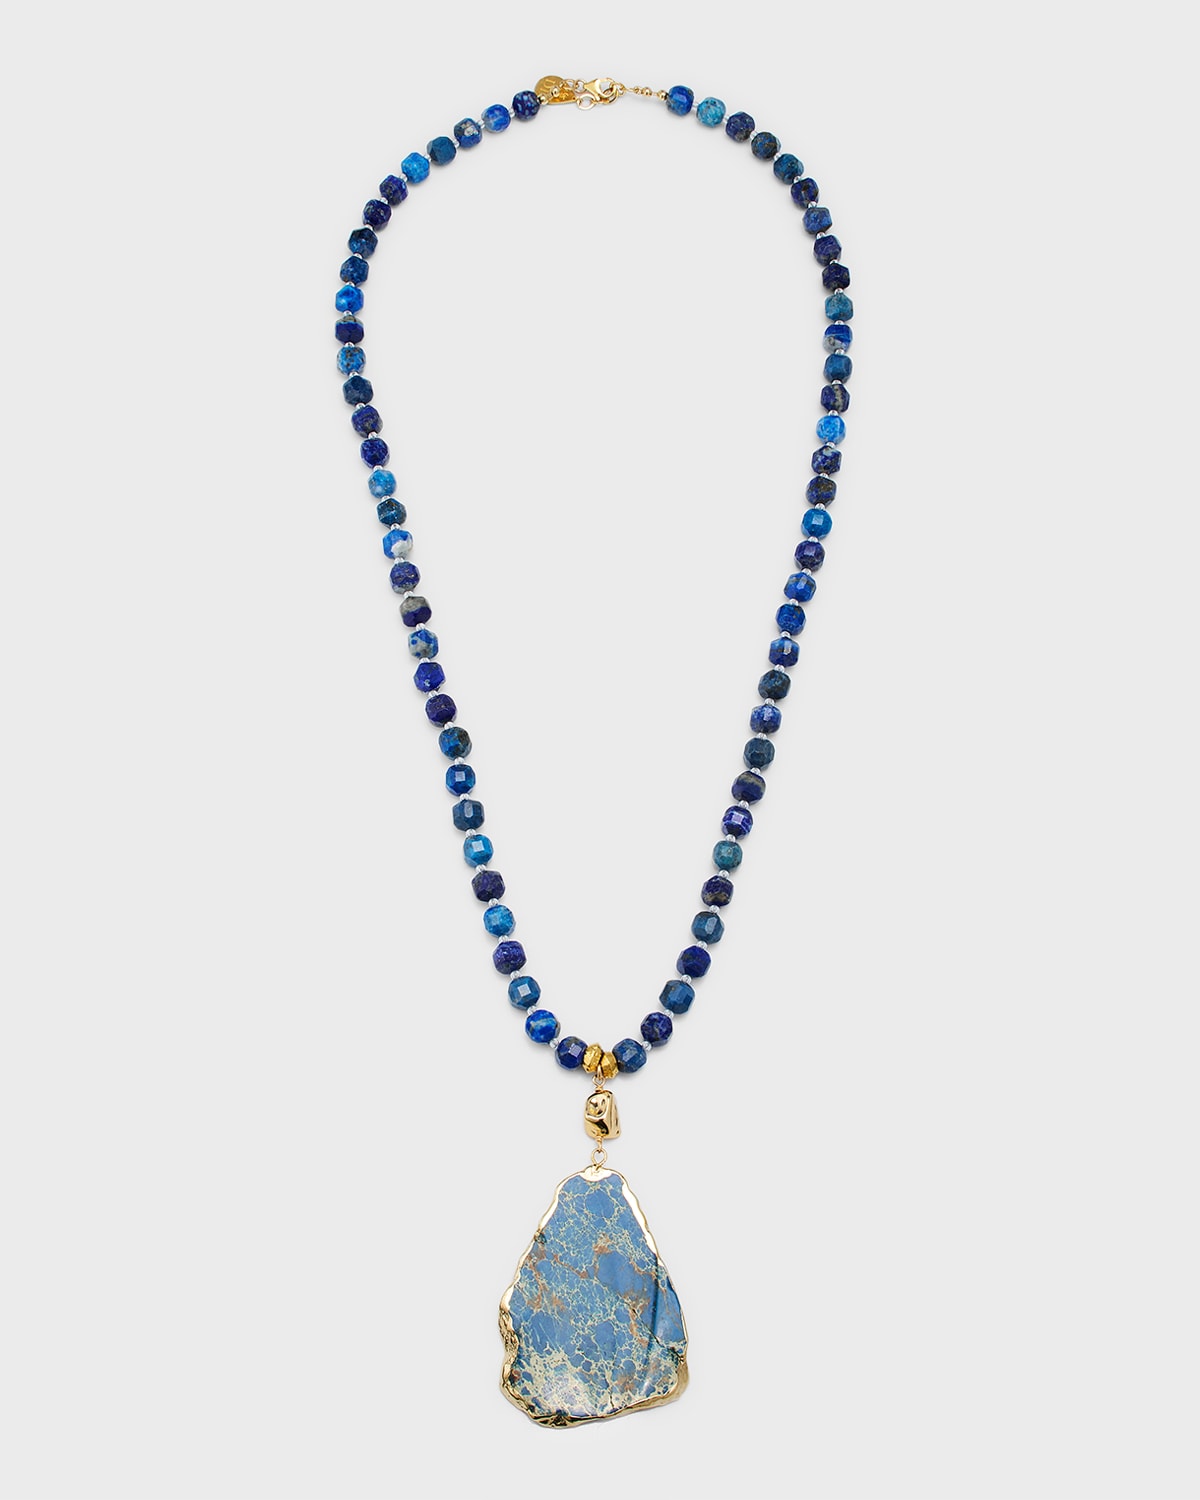 Devon Leigh Long Lapis Blue Pendant Necklace